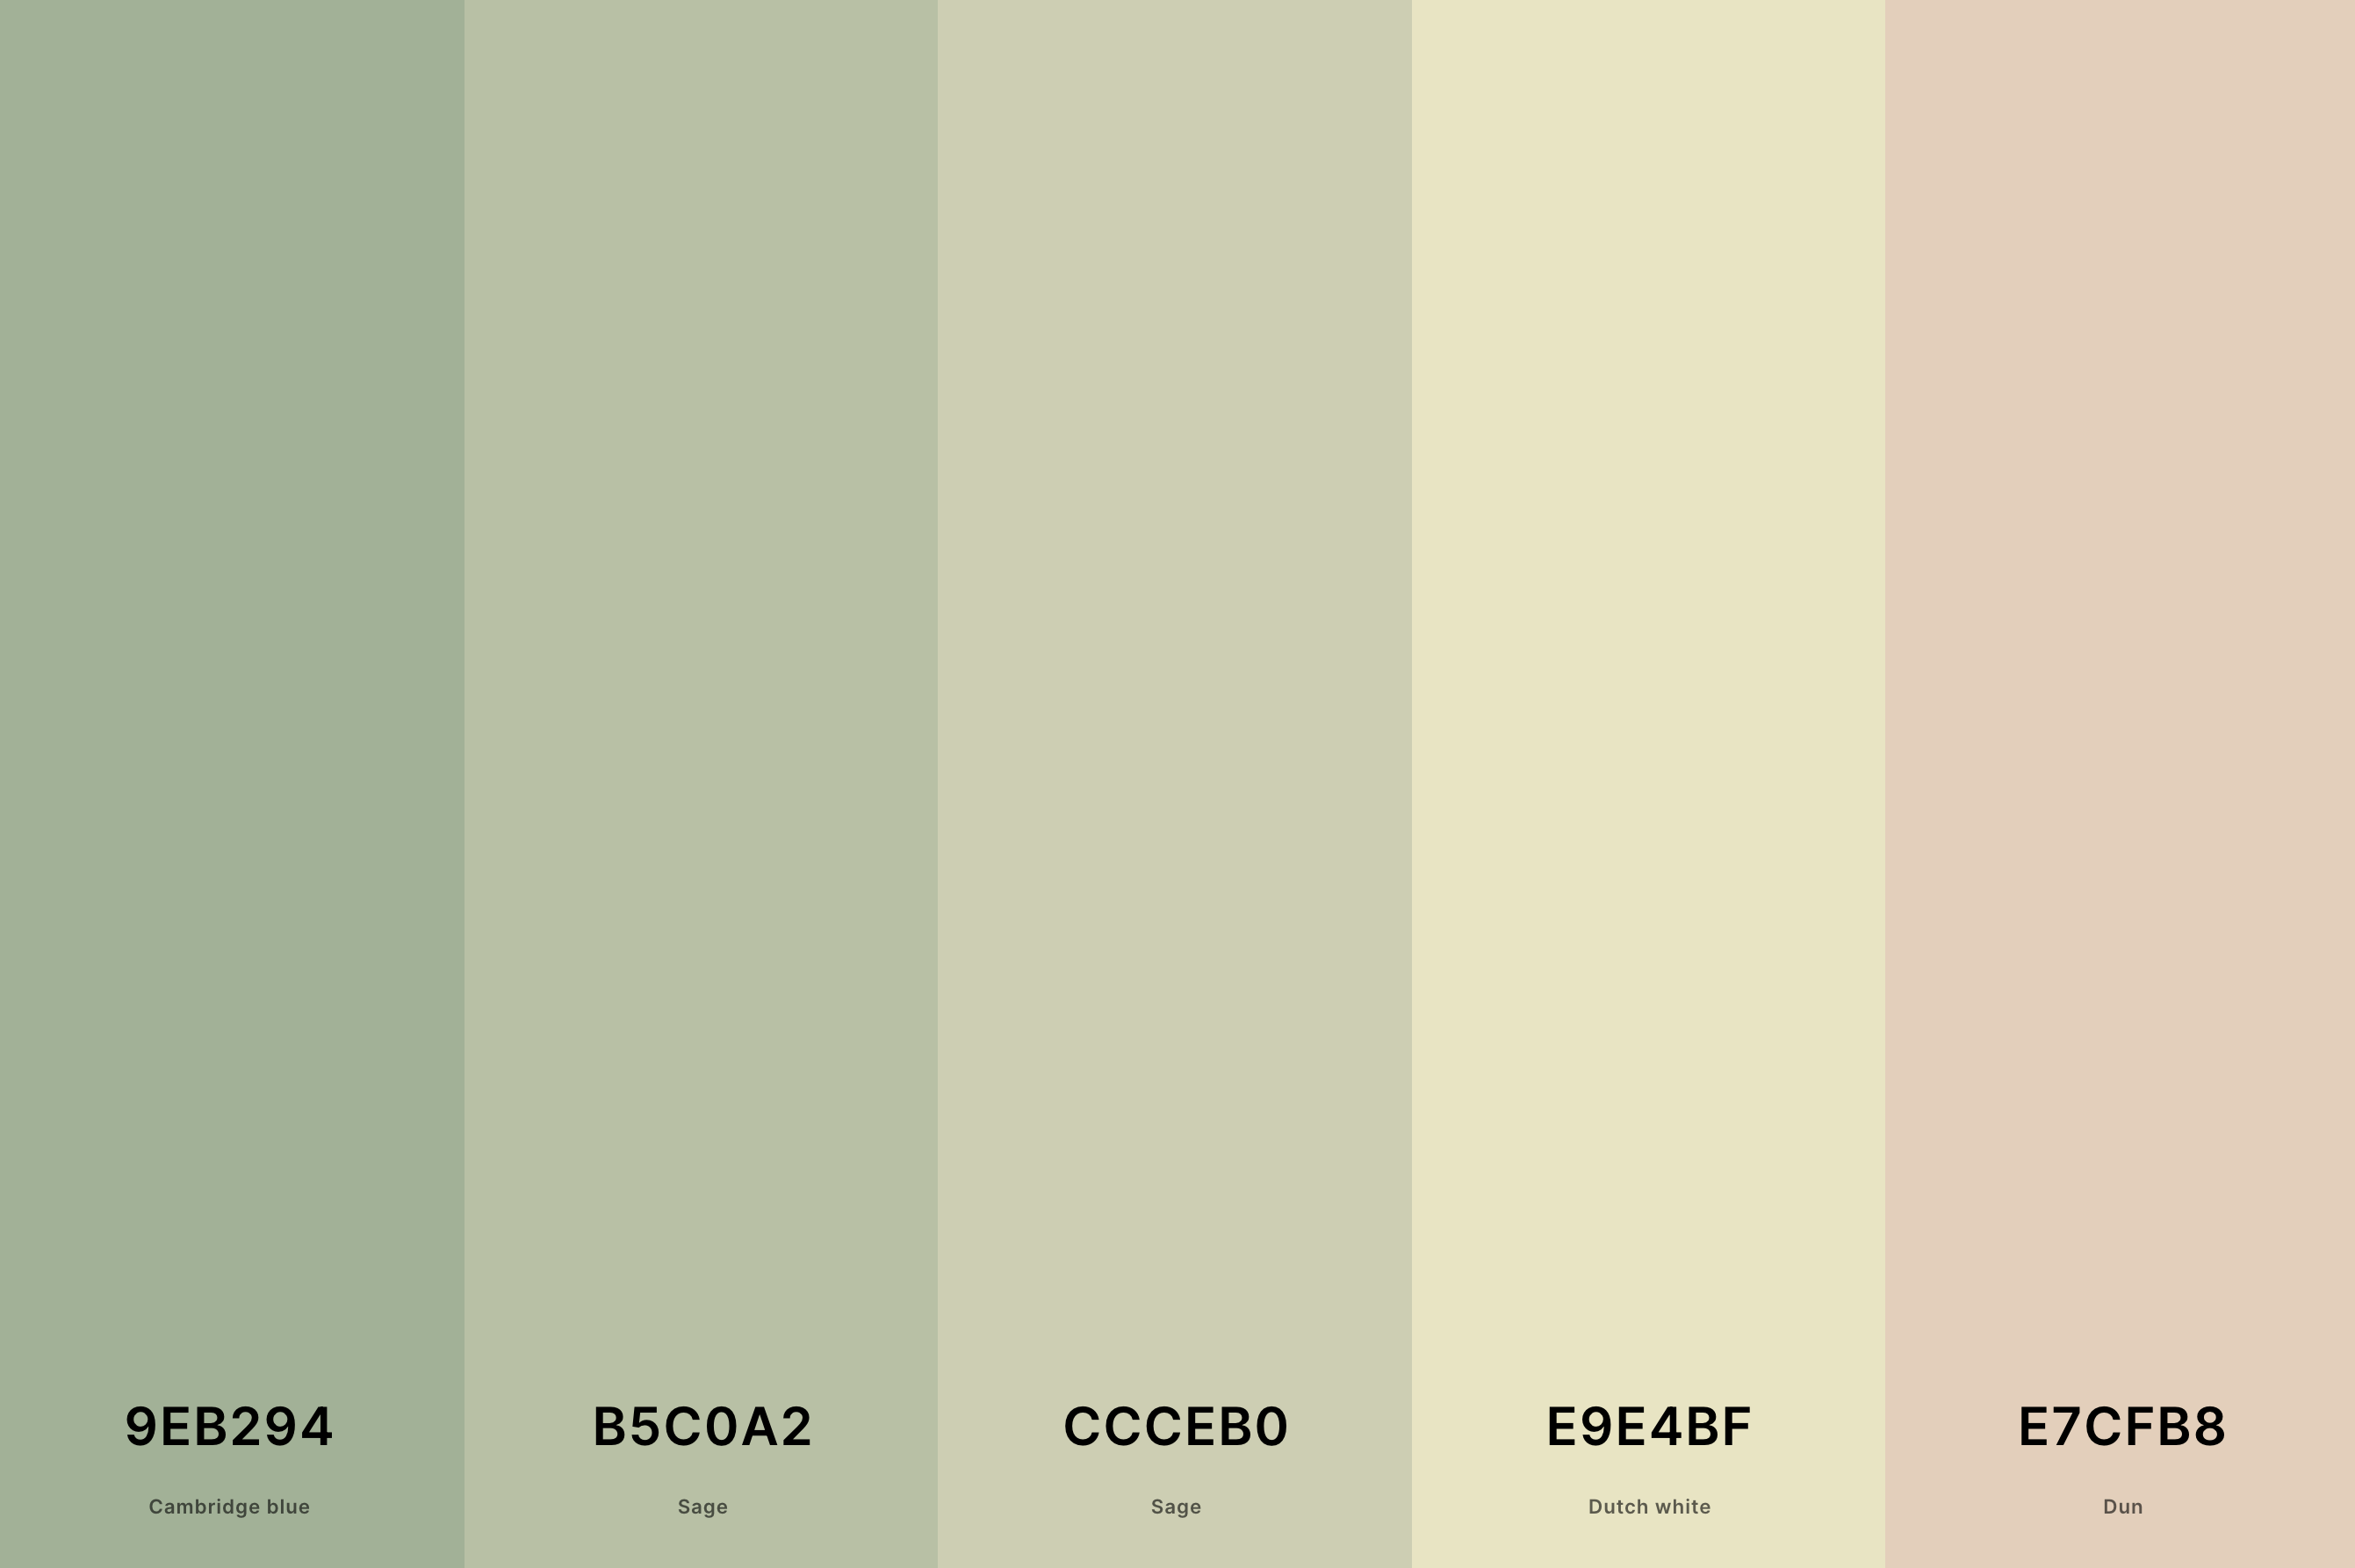 26. Sage Green Pastel Color Palette Color Palette with Cambridge Blue (Hex #9EB294) + Sage (Hex #B5C0A2) + Sage (Hex #CCCEB0) + Dutch White (Hex #E9E4BF) + Dun (Hex #E7CFB8) Color Palette with Hex Codes